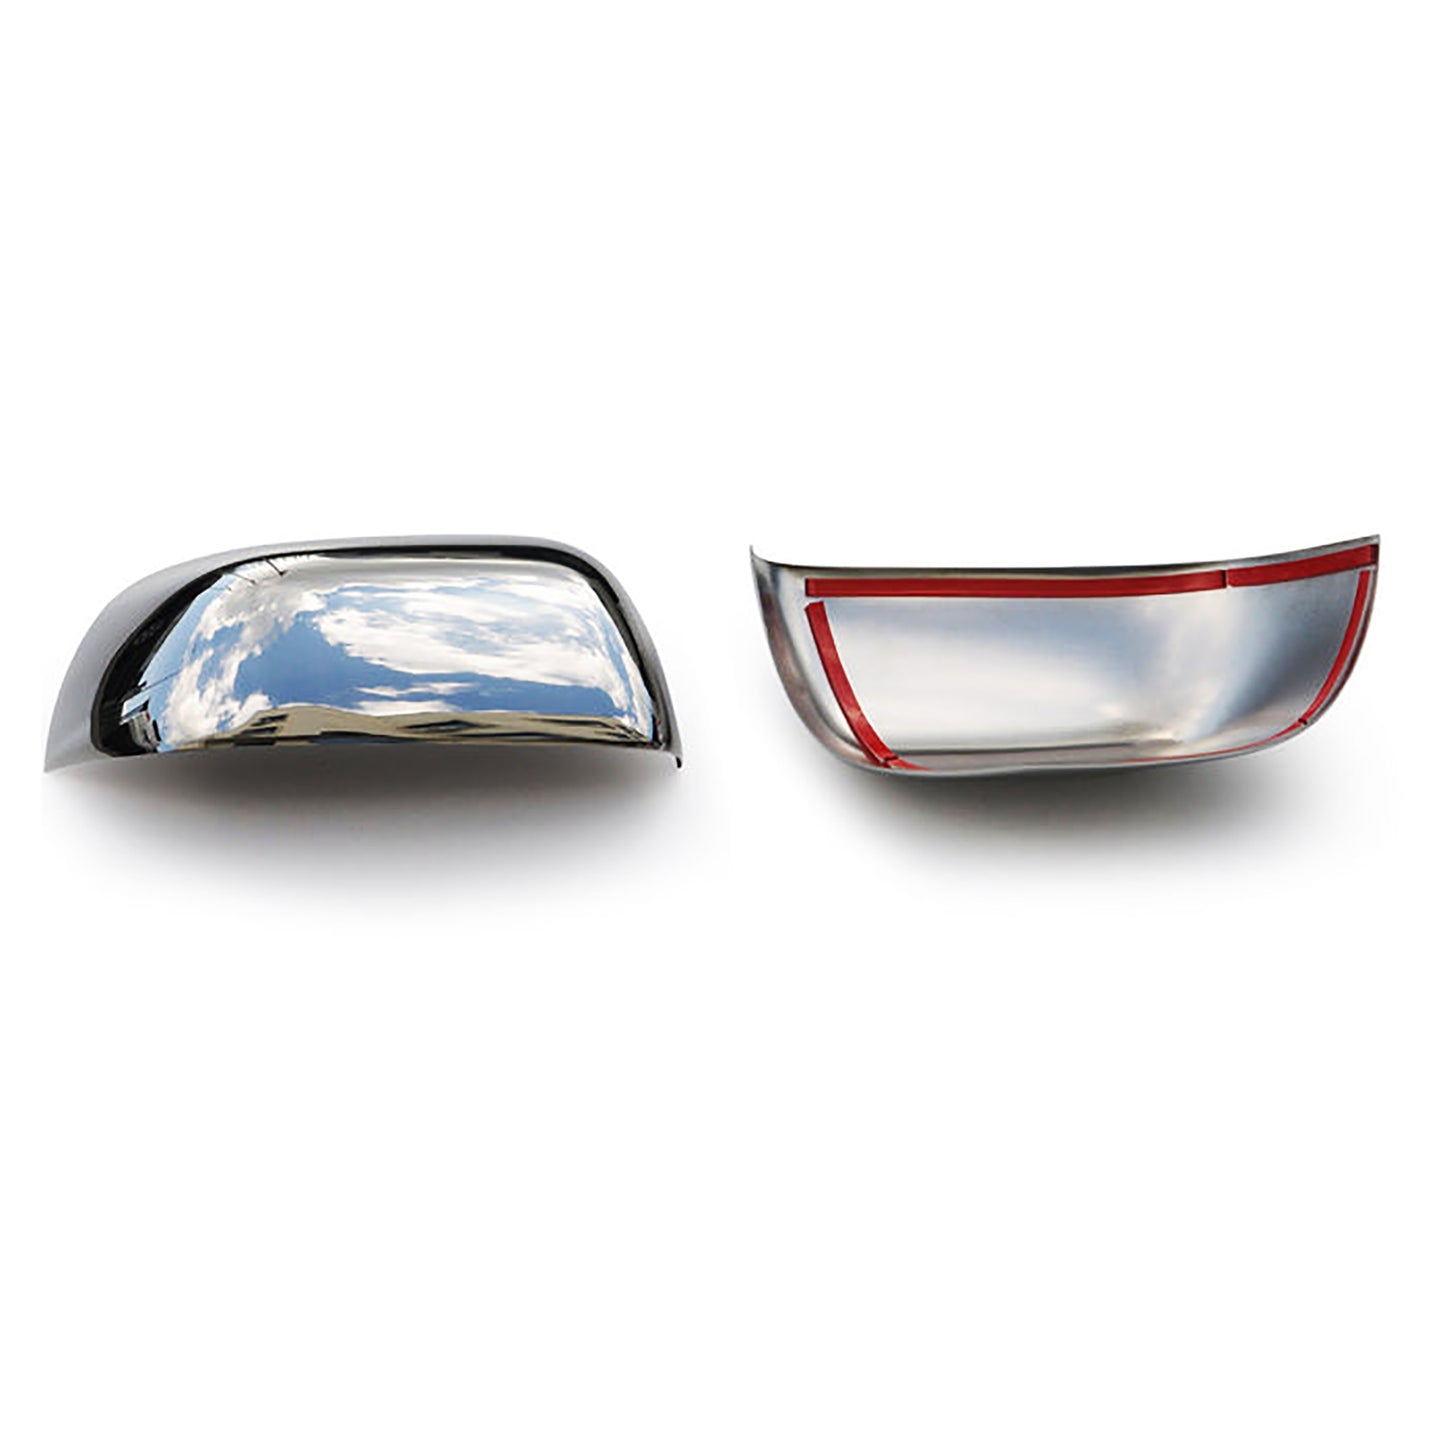 Nissan Micra Krom Ayna Kapağı Aksesuarları Detaylı Resimleri, Kampanya bilgileri ve fiyatı - 3